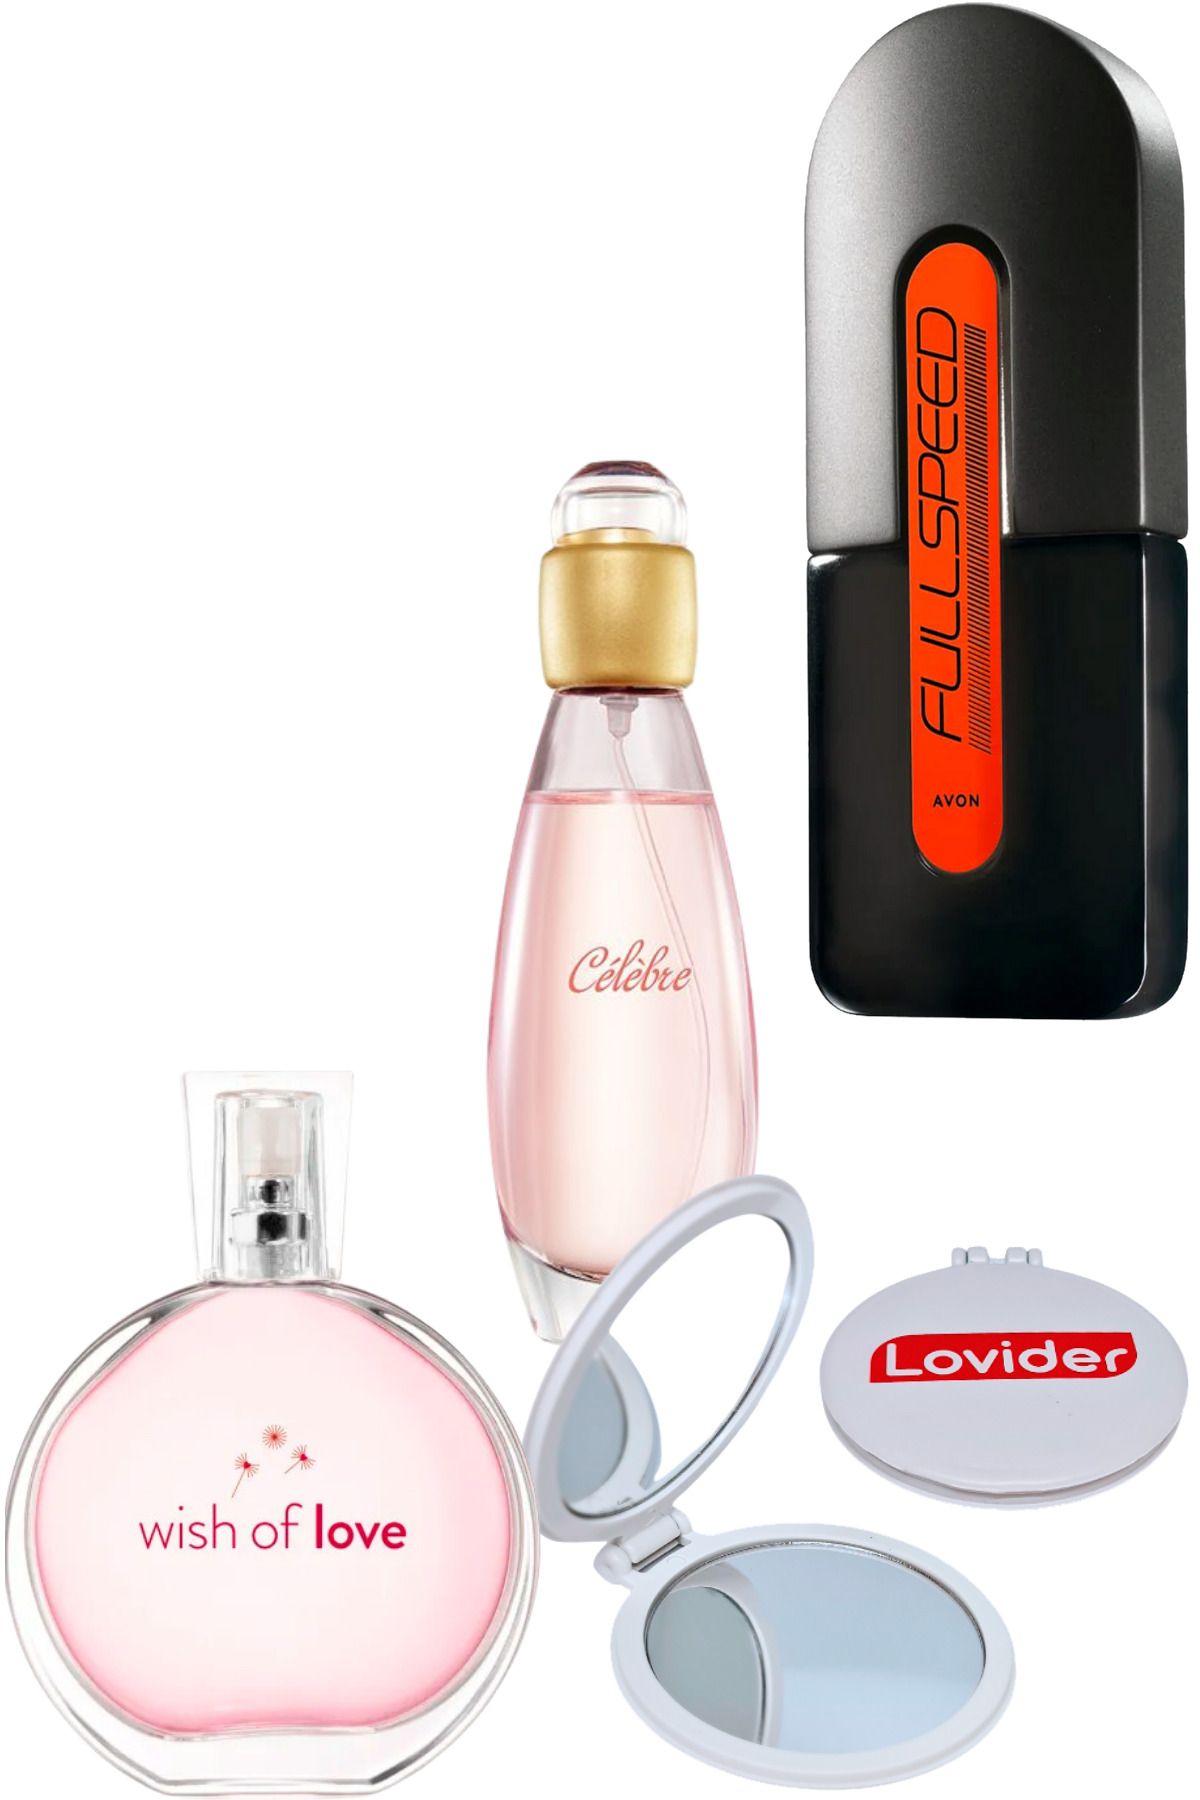 Avon Wish Of Love Kadın + Celebre Kadın + Full Speed Erkek Parfüm + Lovider Cep Aynası